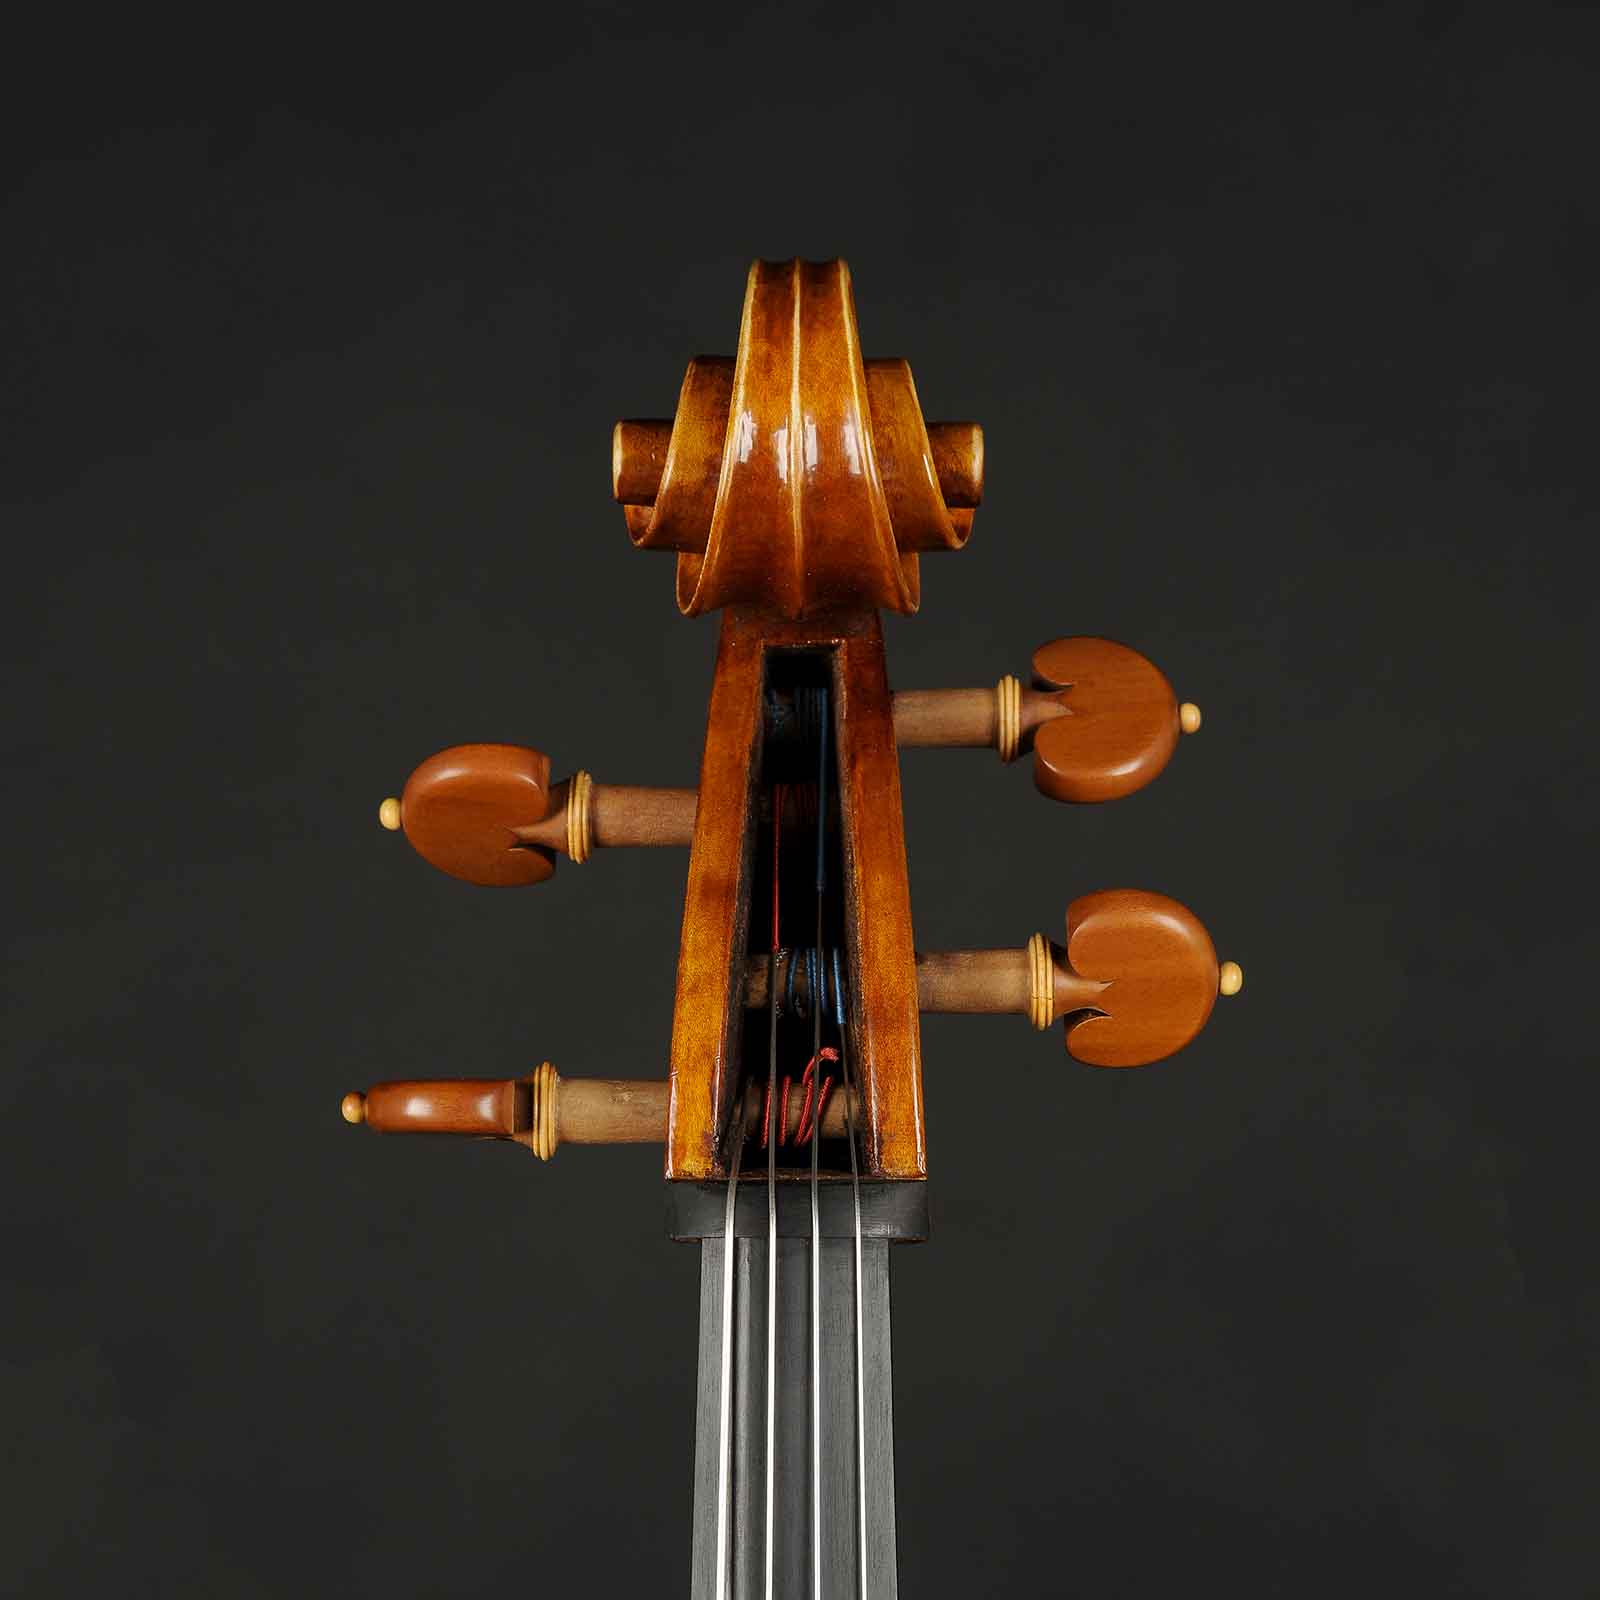 Antonio Stradivari Cremona 1712 “Tullo Ostilio“ - Image 8